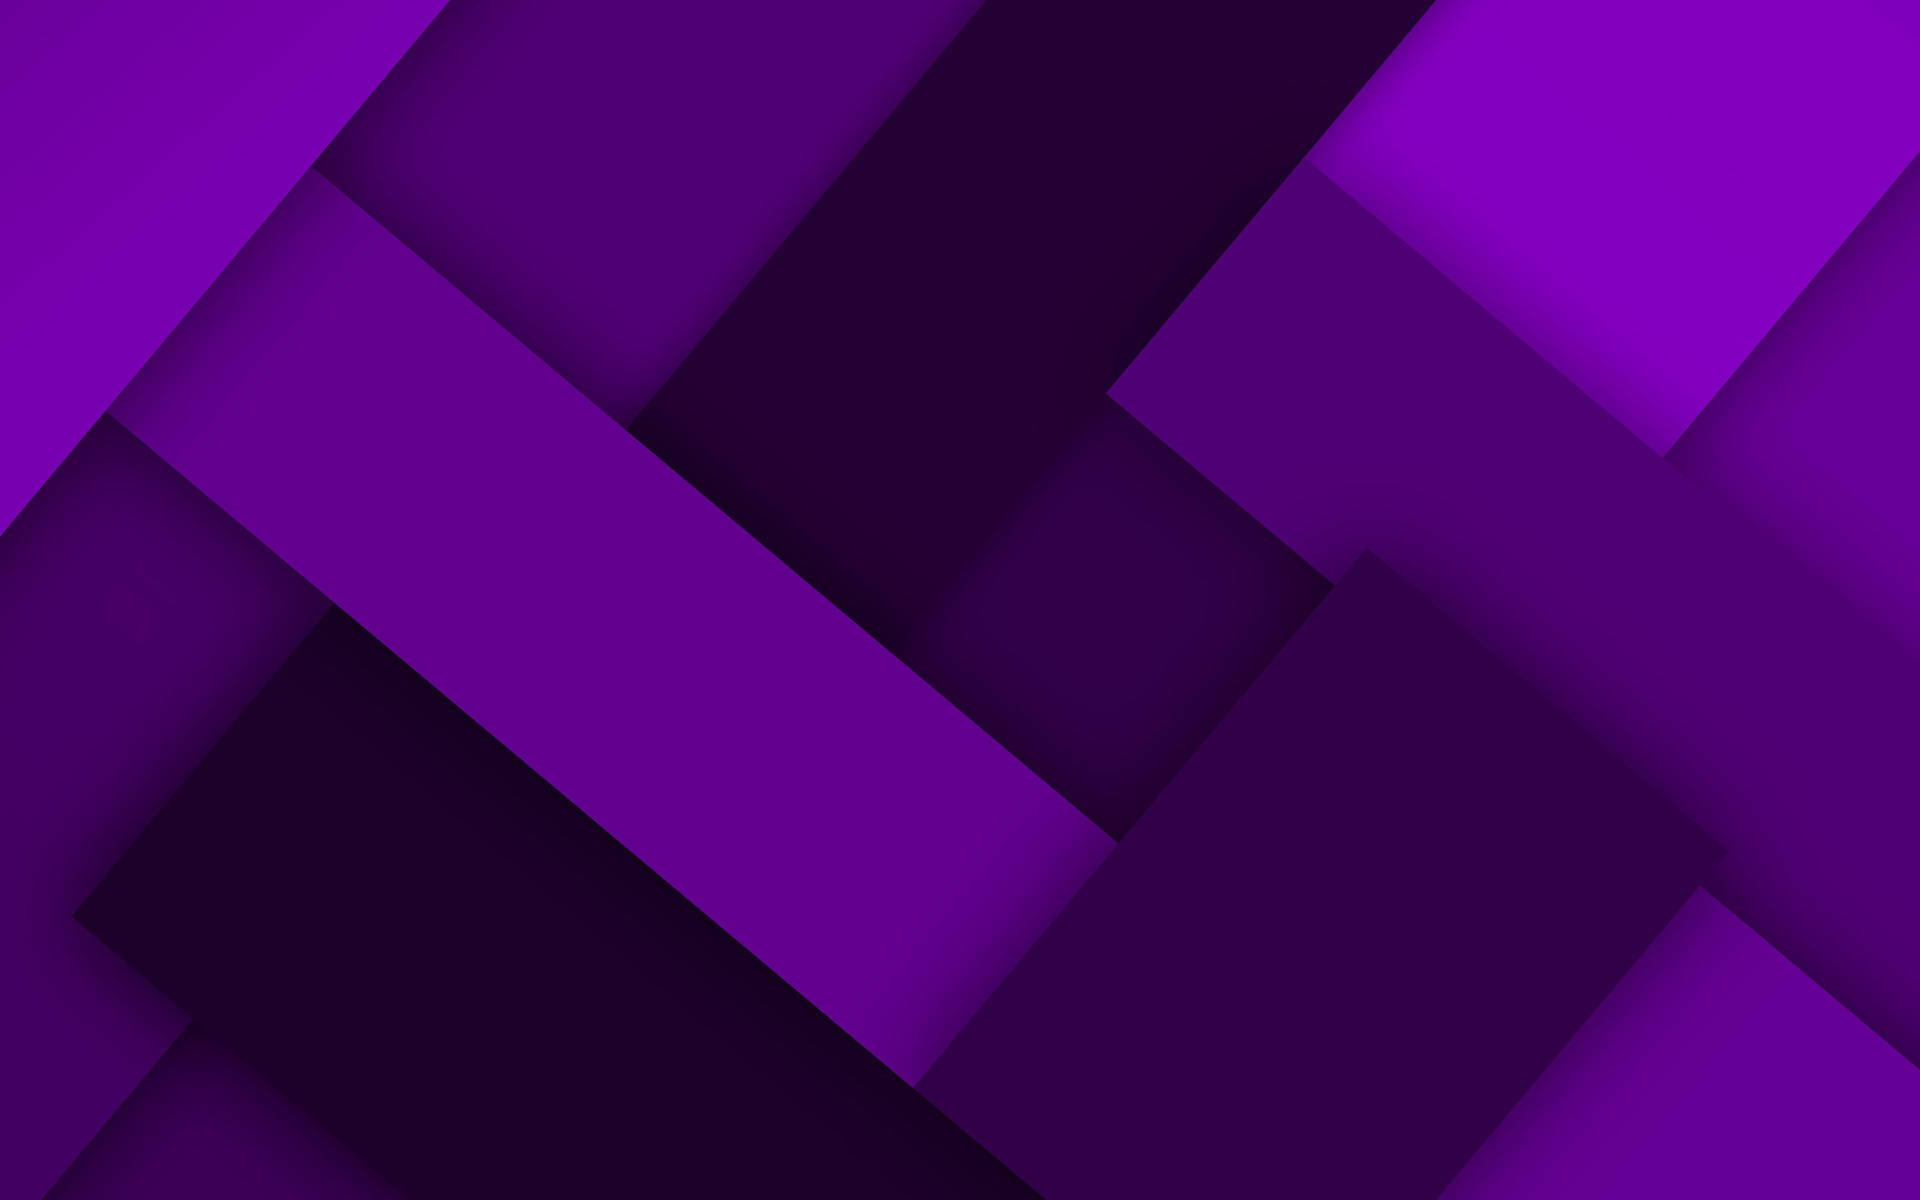 Violet Rectangle Material Design Wallpaper